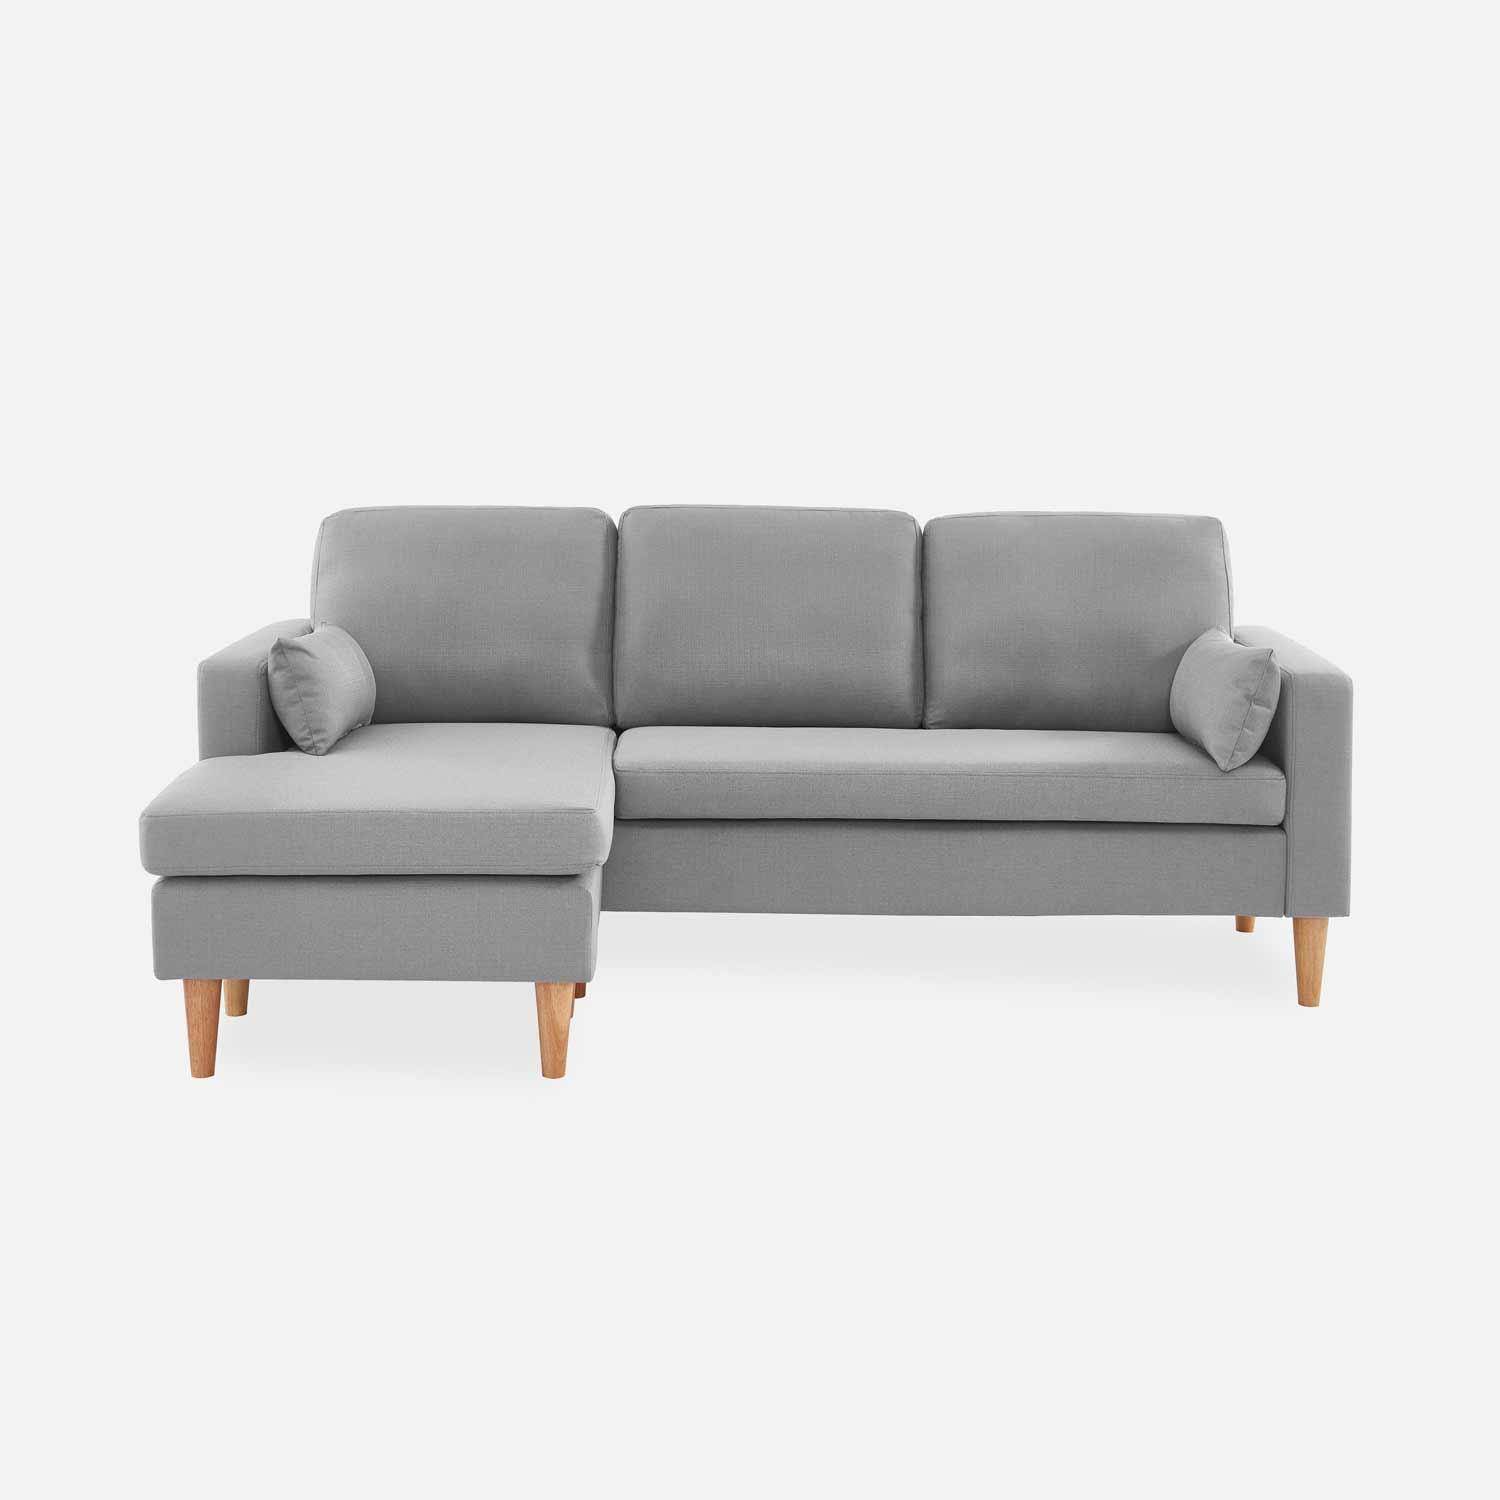 Fauteuil en tissu gris clair, canapé d'angle 3 places réversible fixe droit pieds bois, canapé scandinave  Photo2